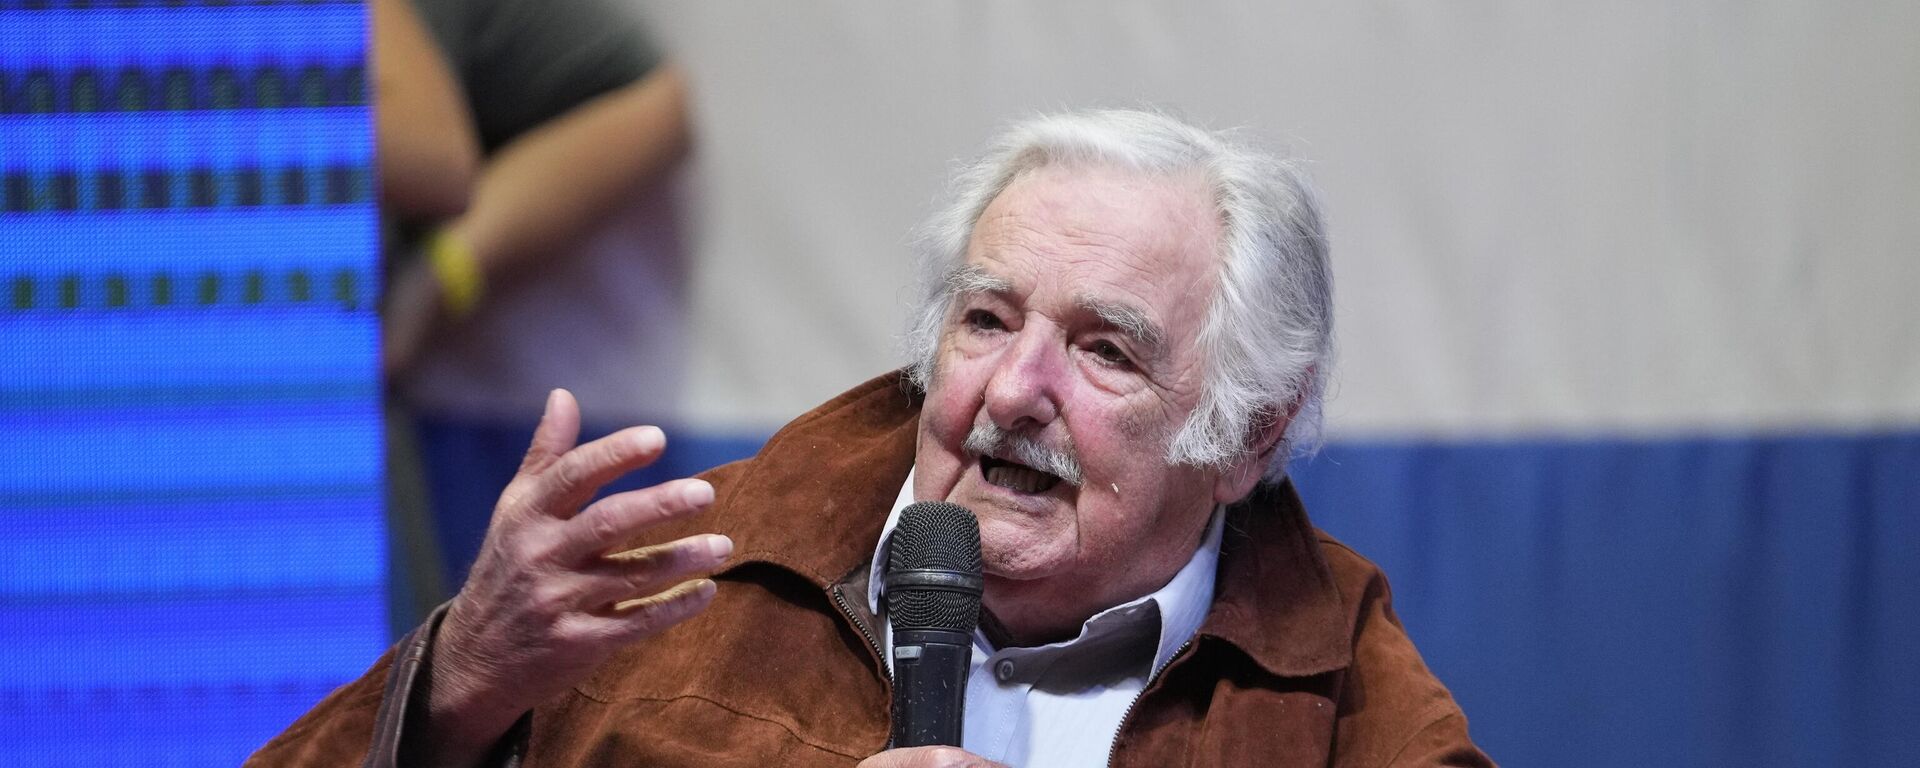 El expresidente uruguayo José Mujica durante un acto político en Paraguay en abril de 2023 - Sputnik Mundo, 1920, 16.05.2023